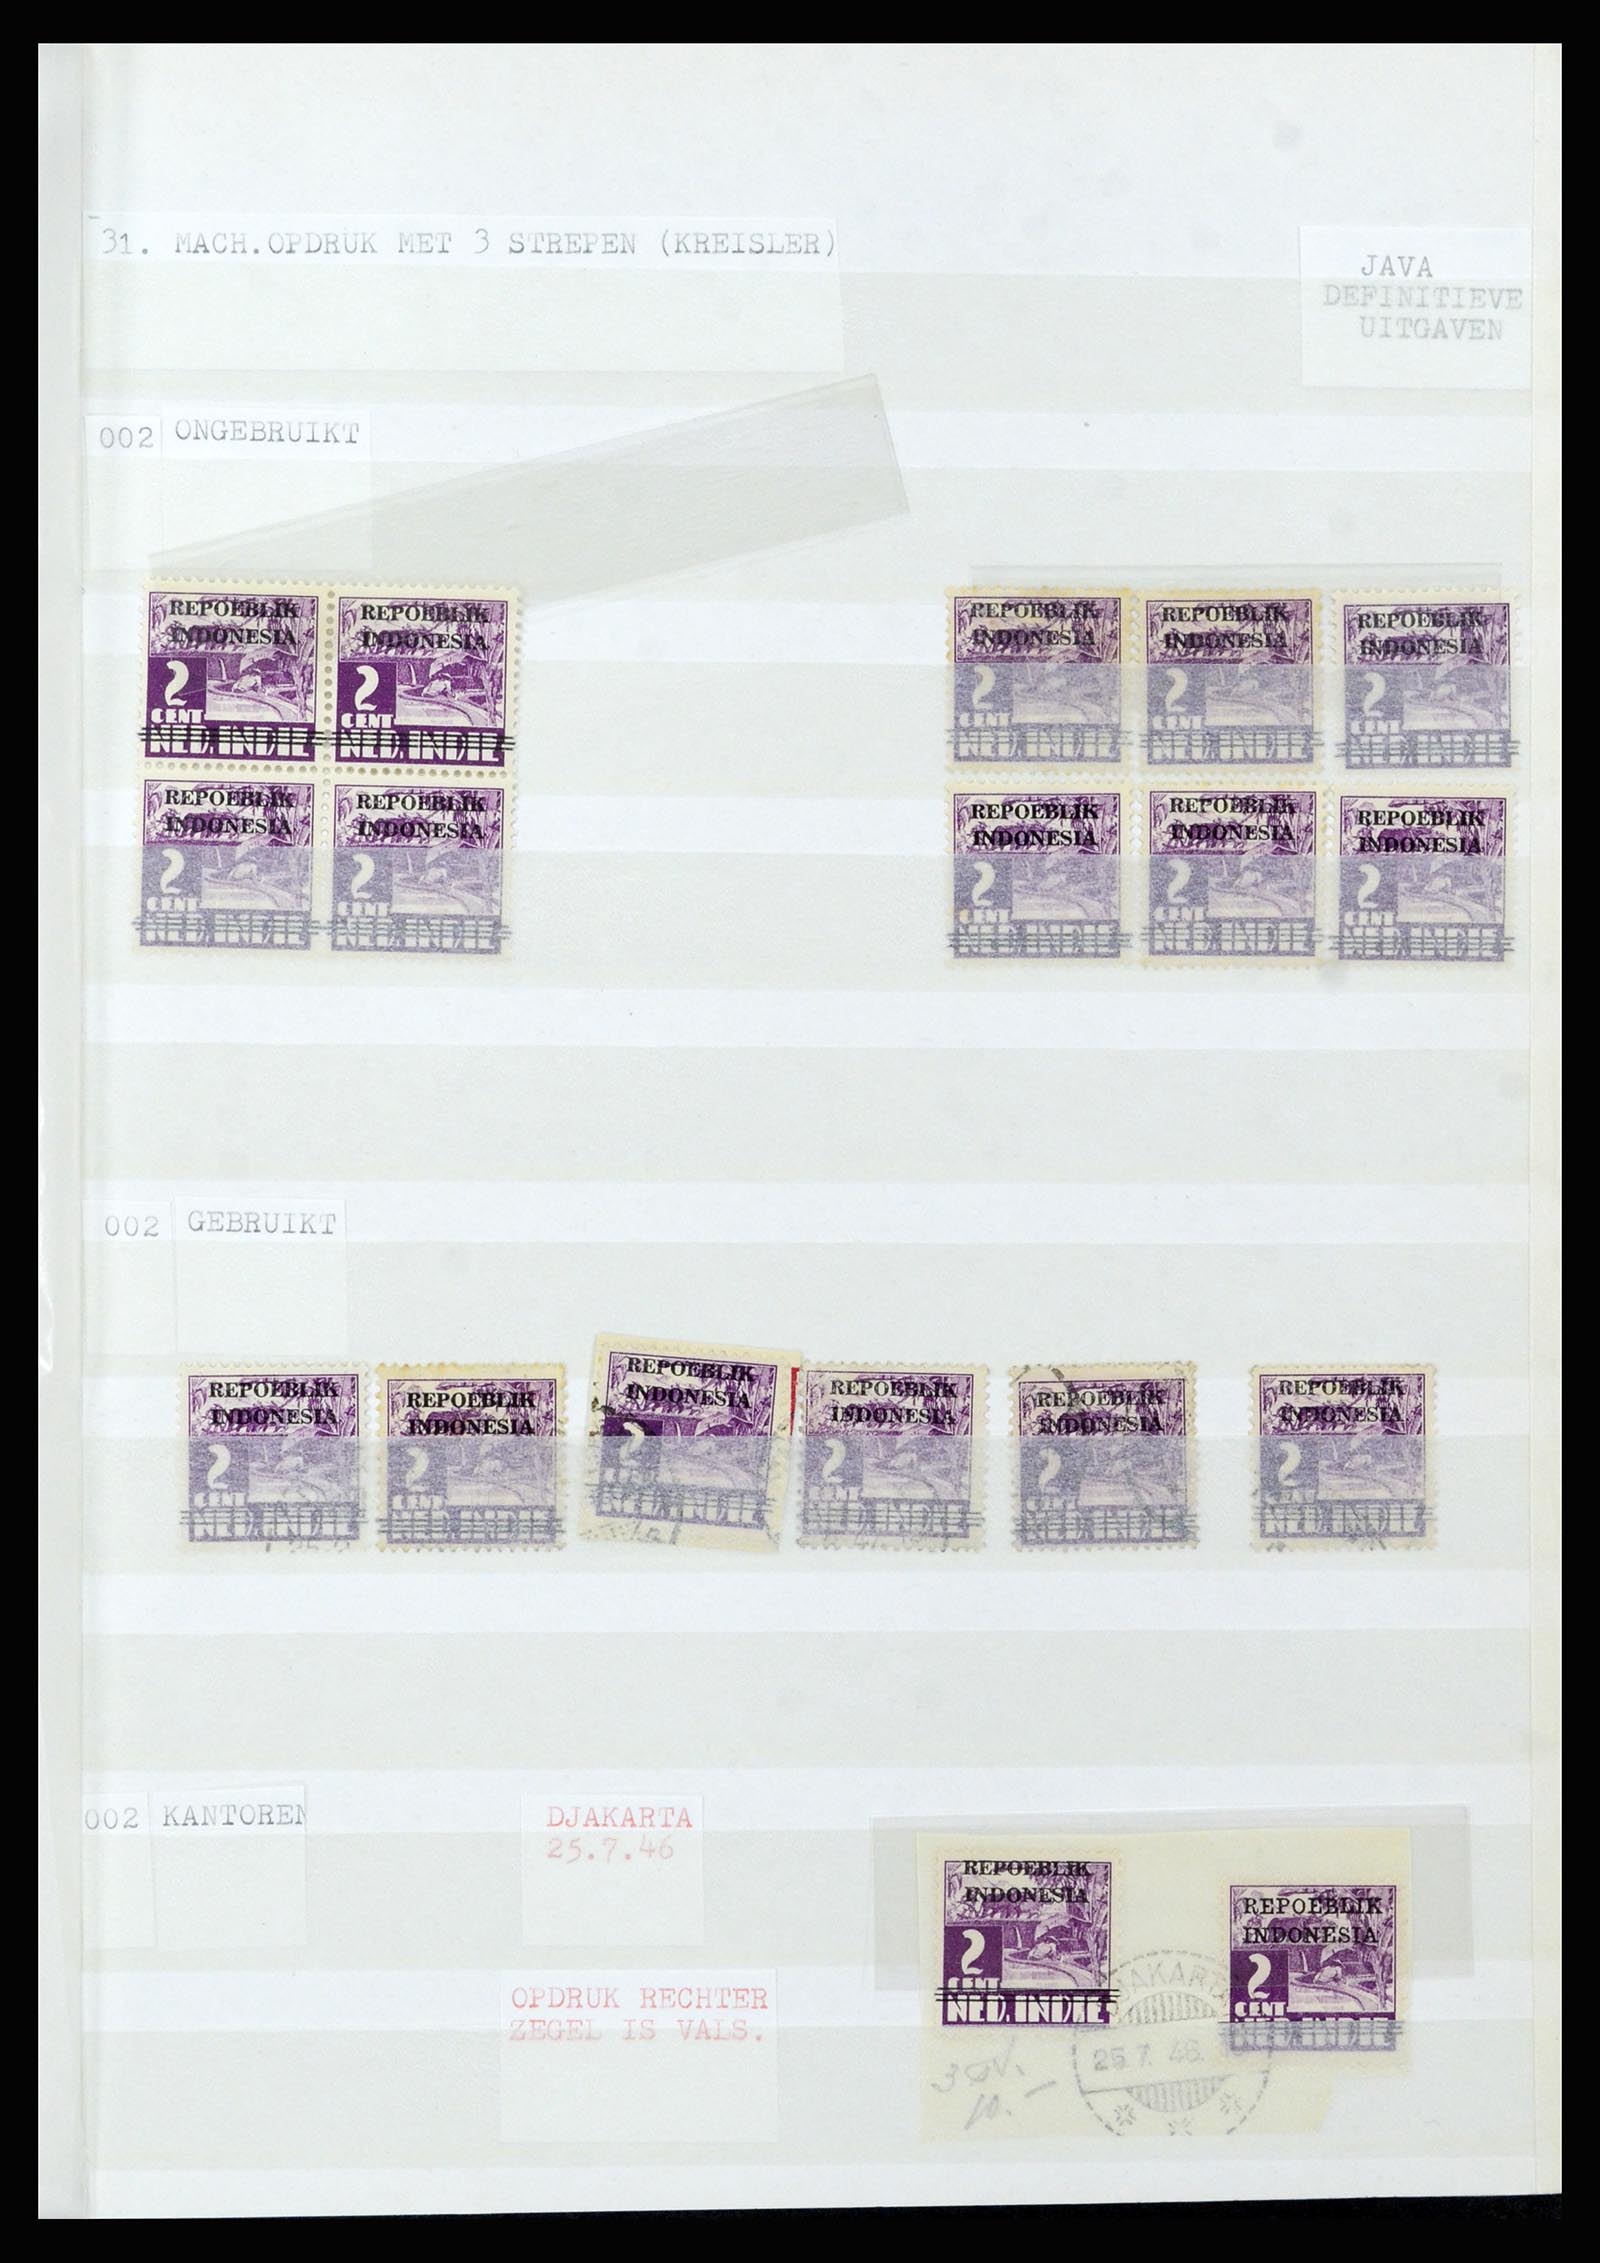 36742 300 - Stamp collection 36742 Dutch Indies interim period 1945-1949.